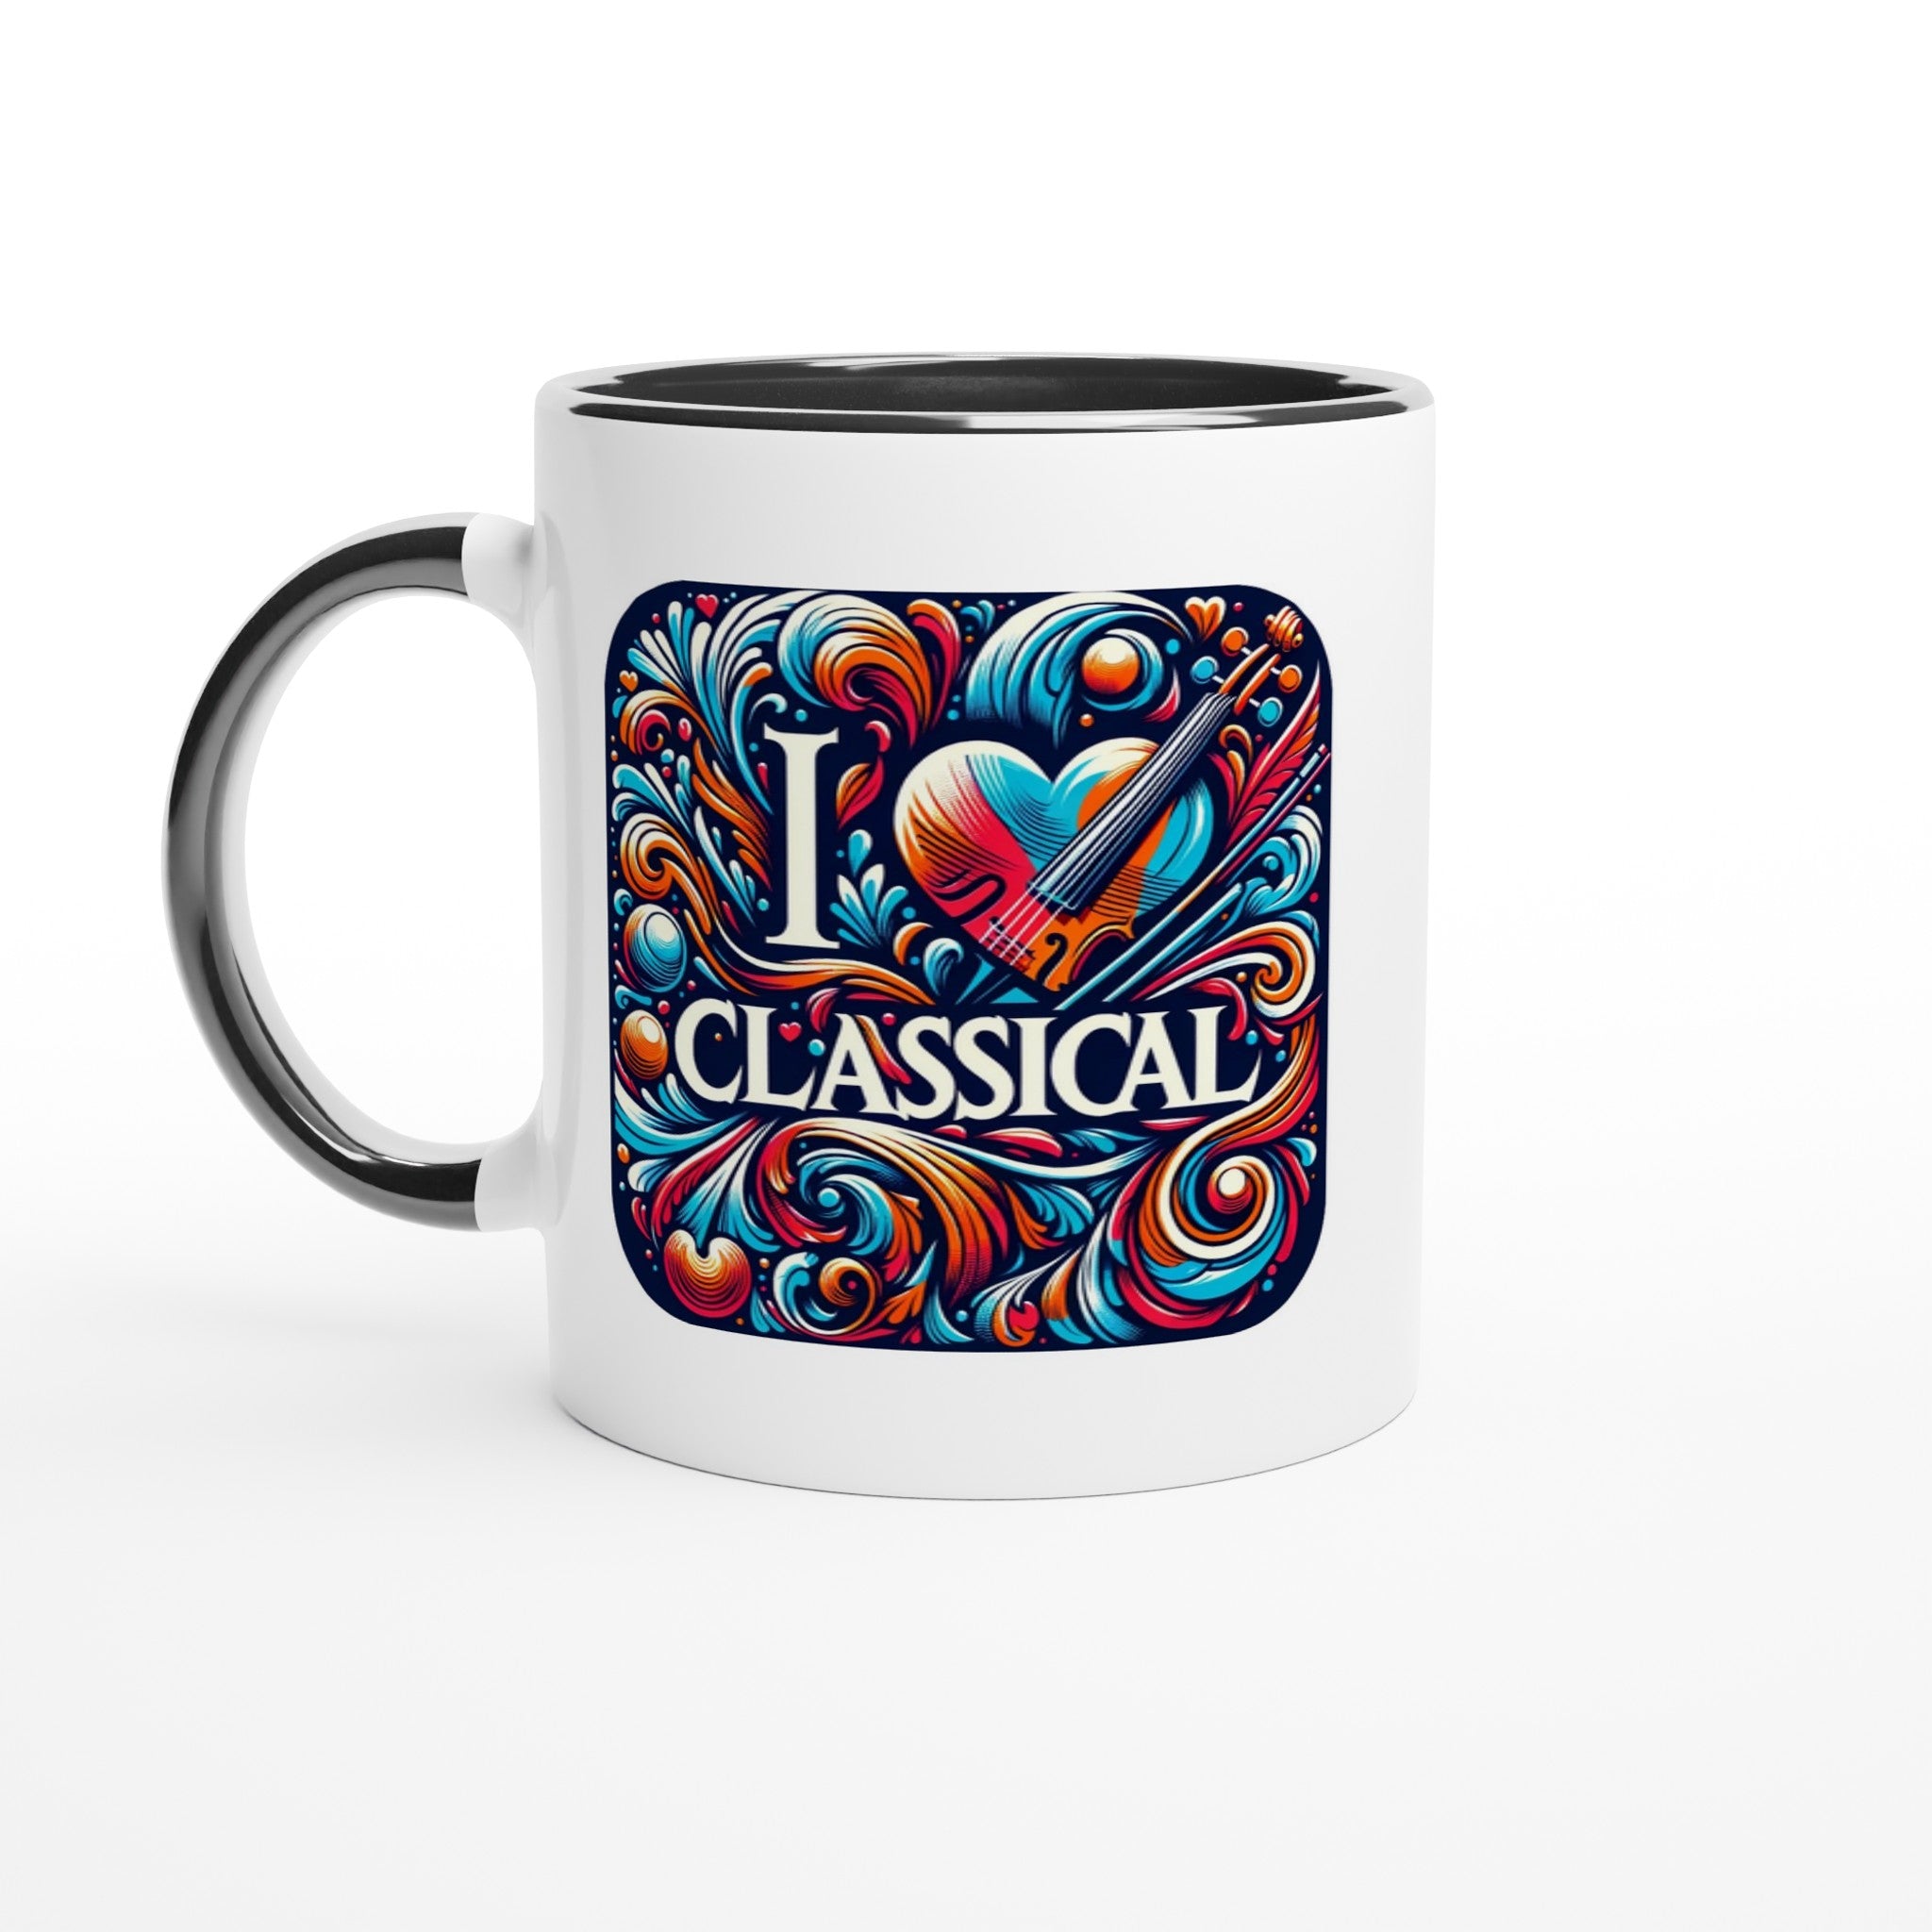 "I LOVE CLASSICAL" White 11oz Ceramic Mug with Color Inside